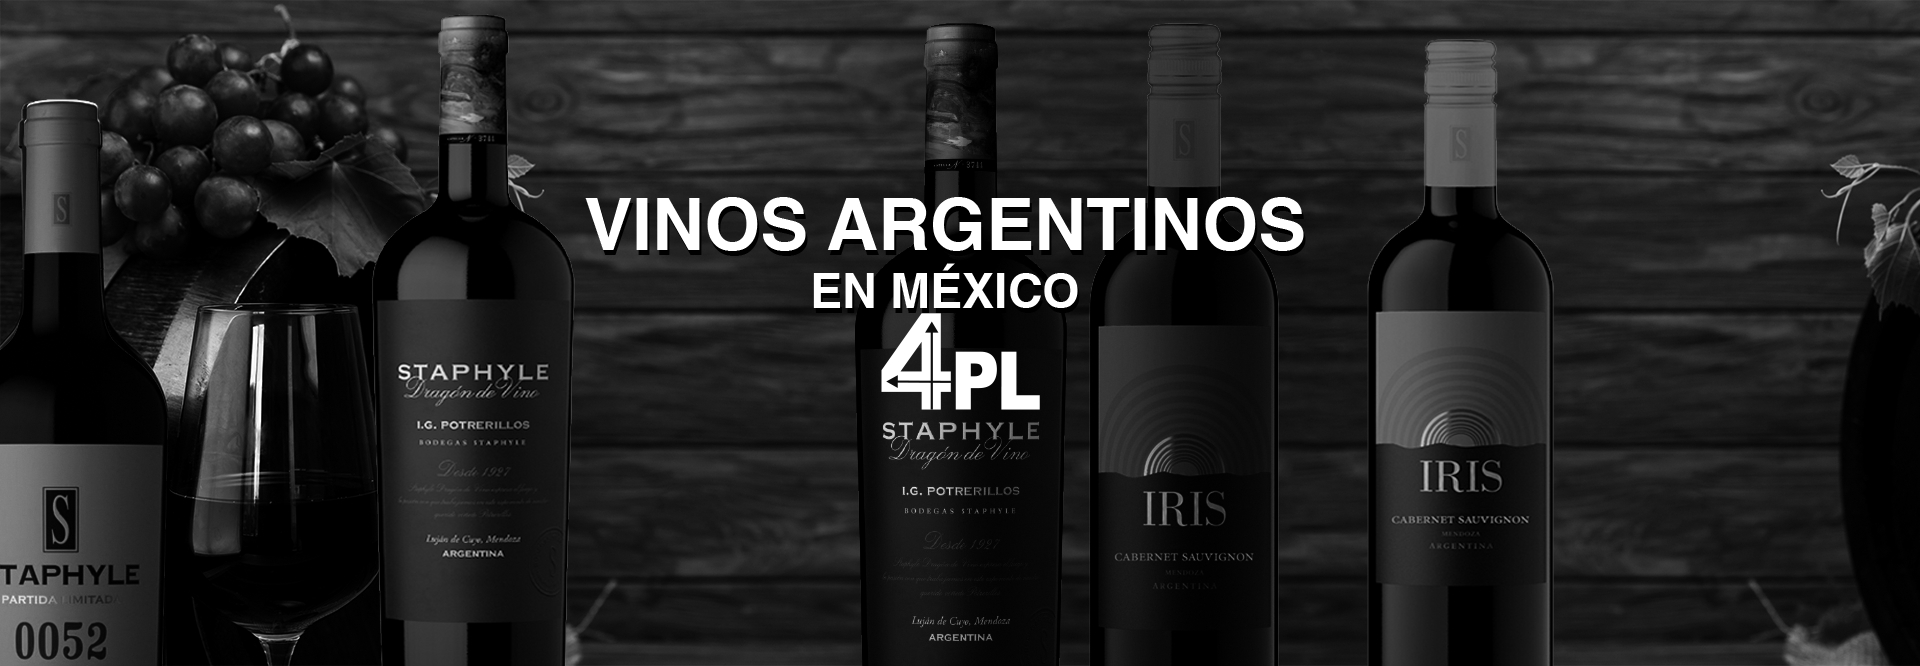 Vinos Argentinos Venta en México